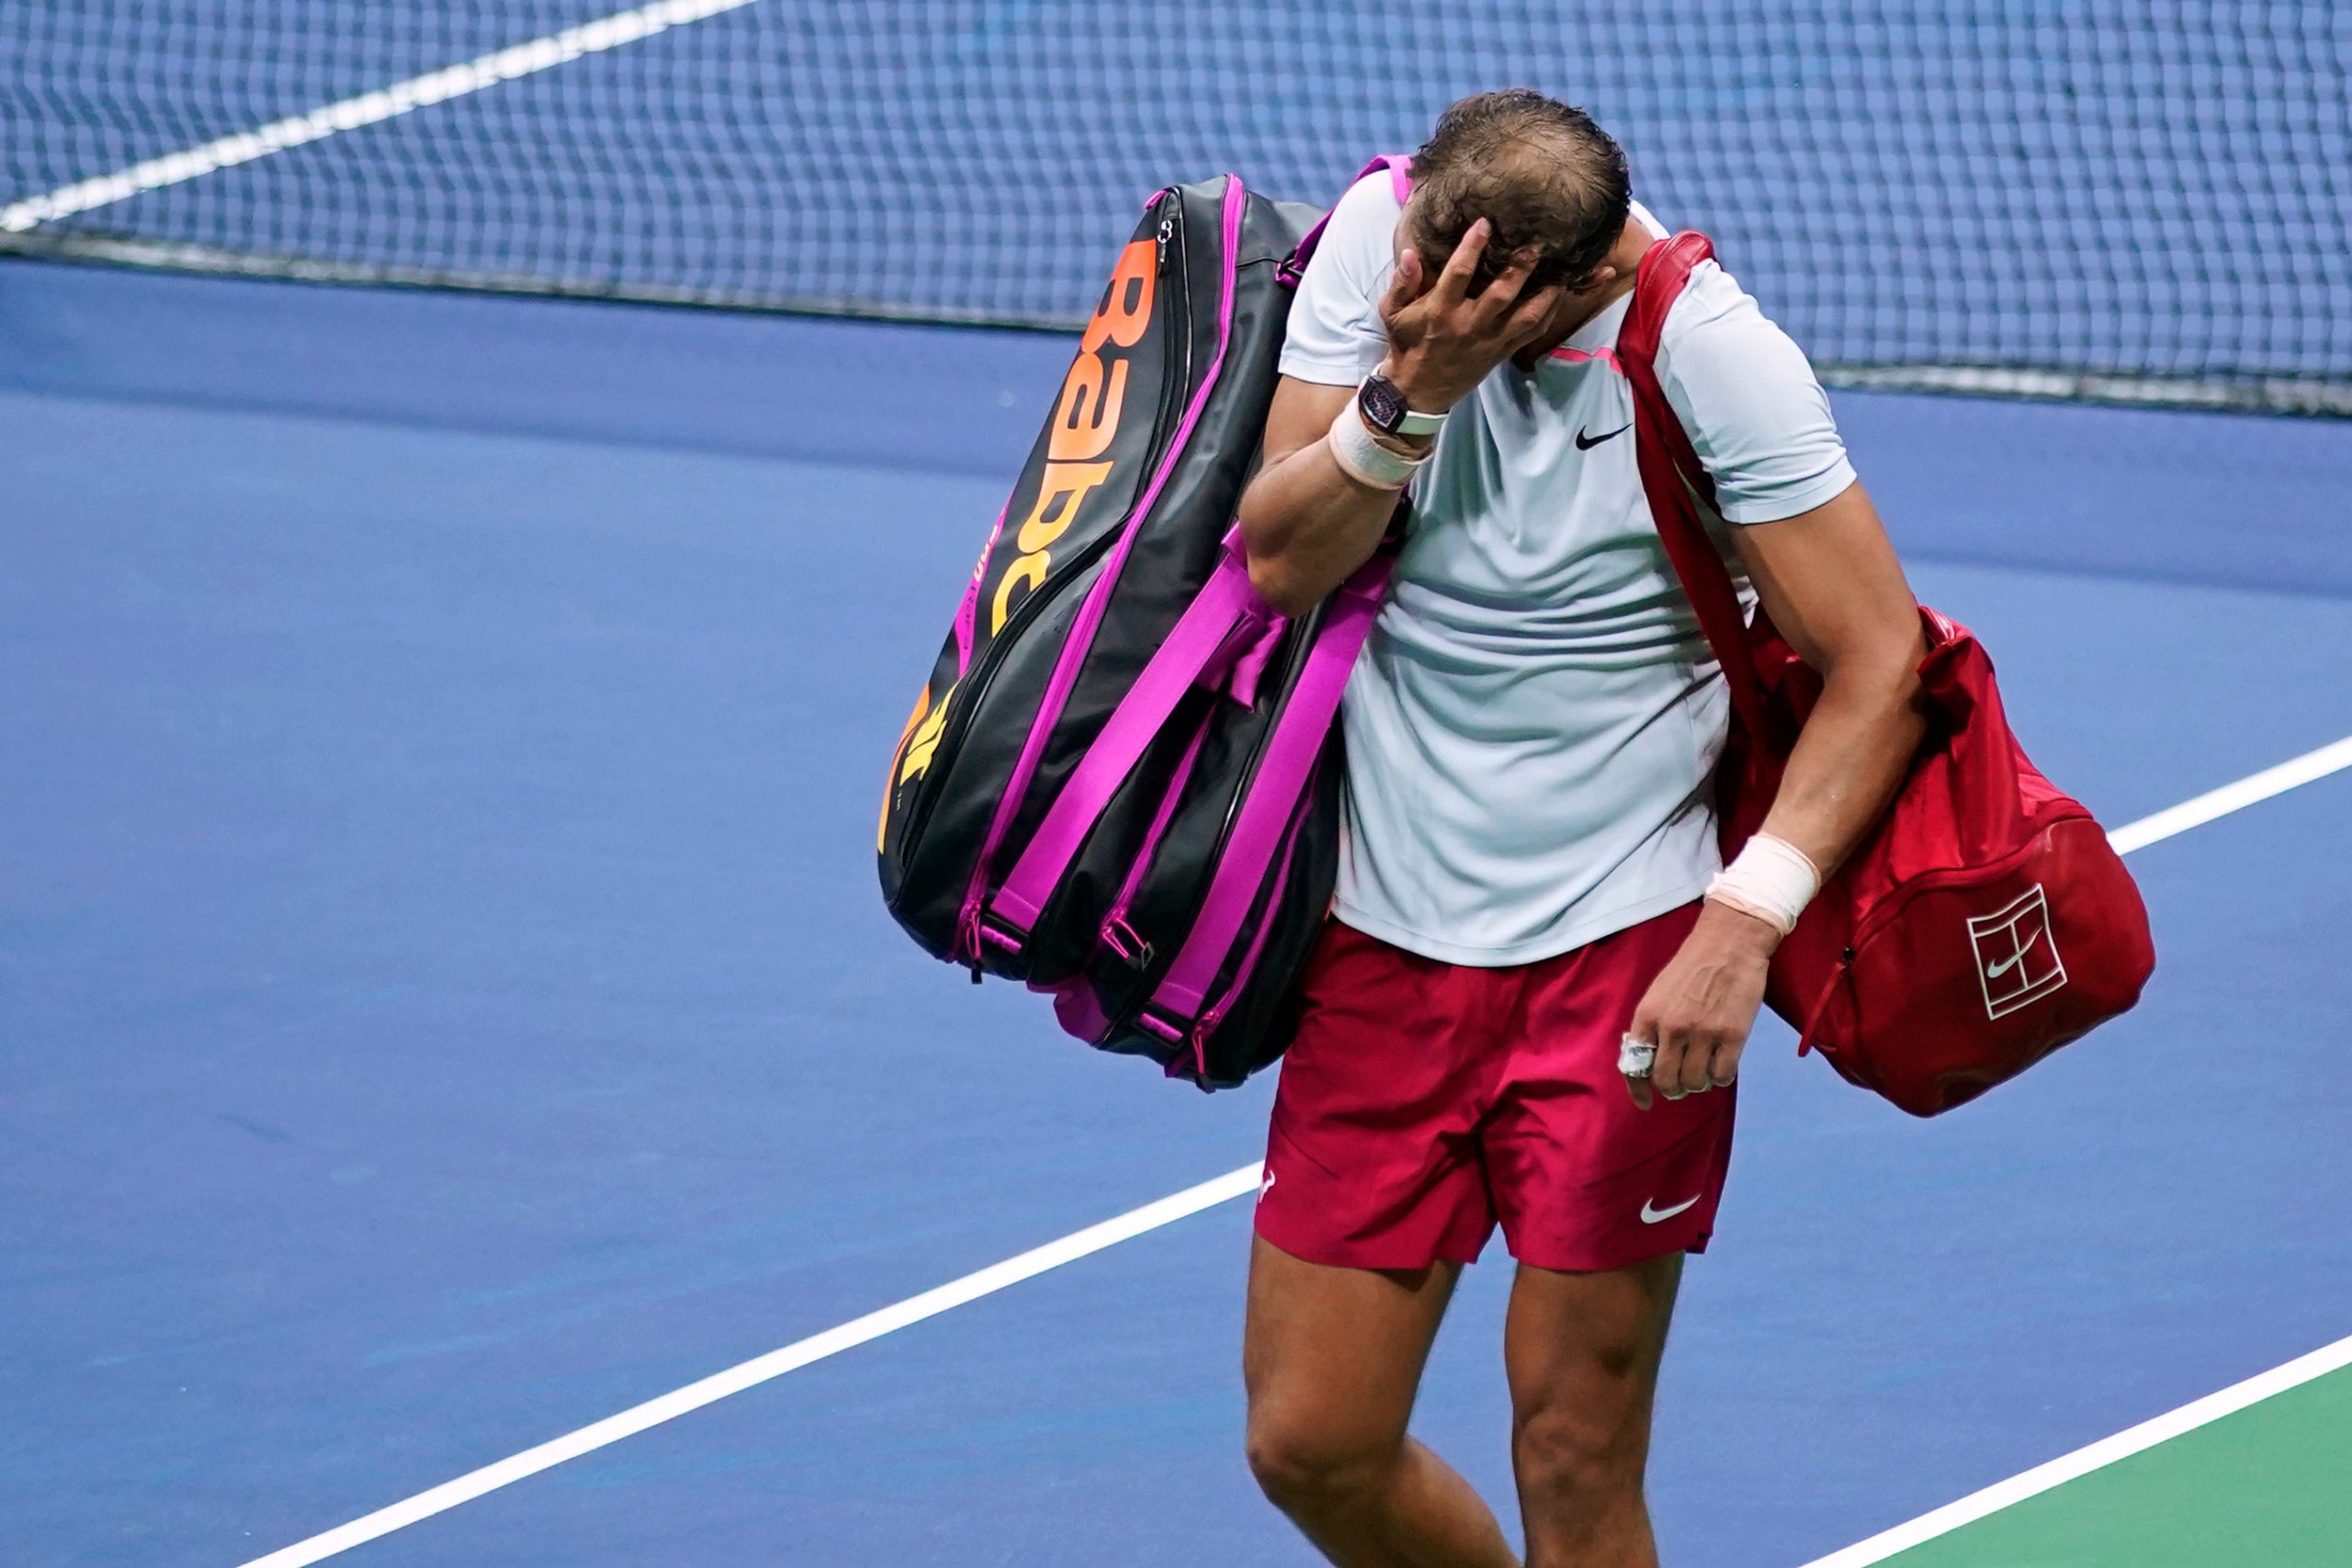 Rafael Nadal’s struggle in US Open 2022